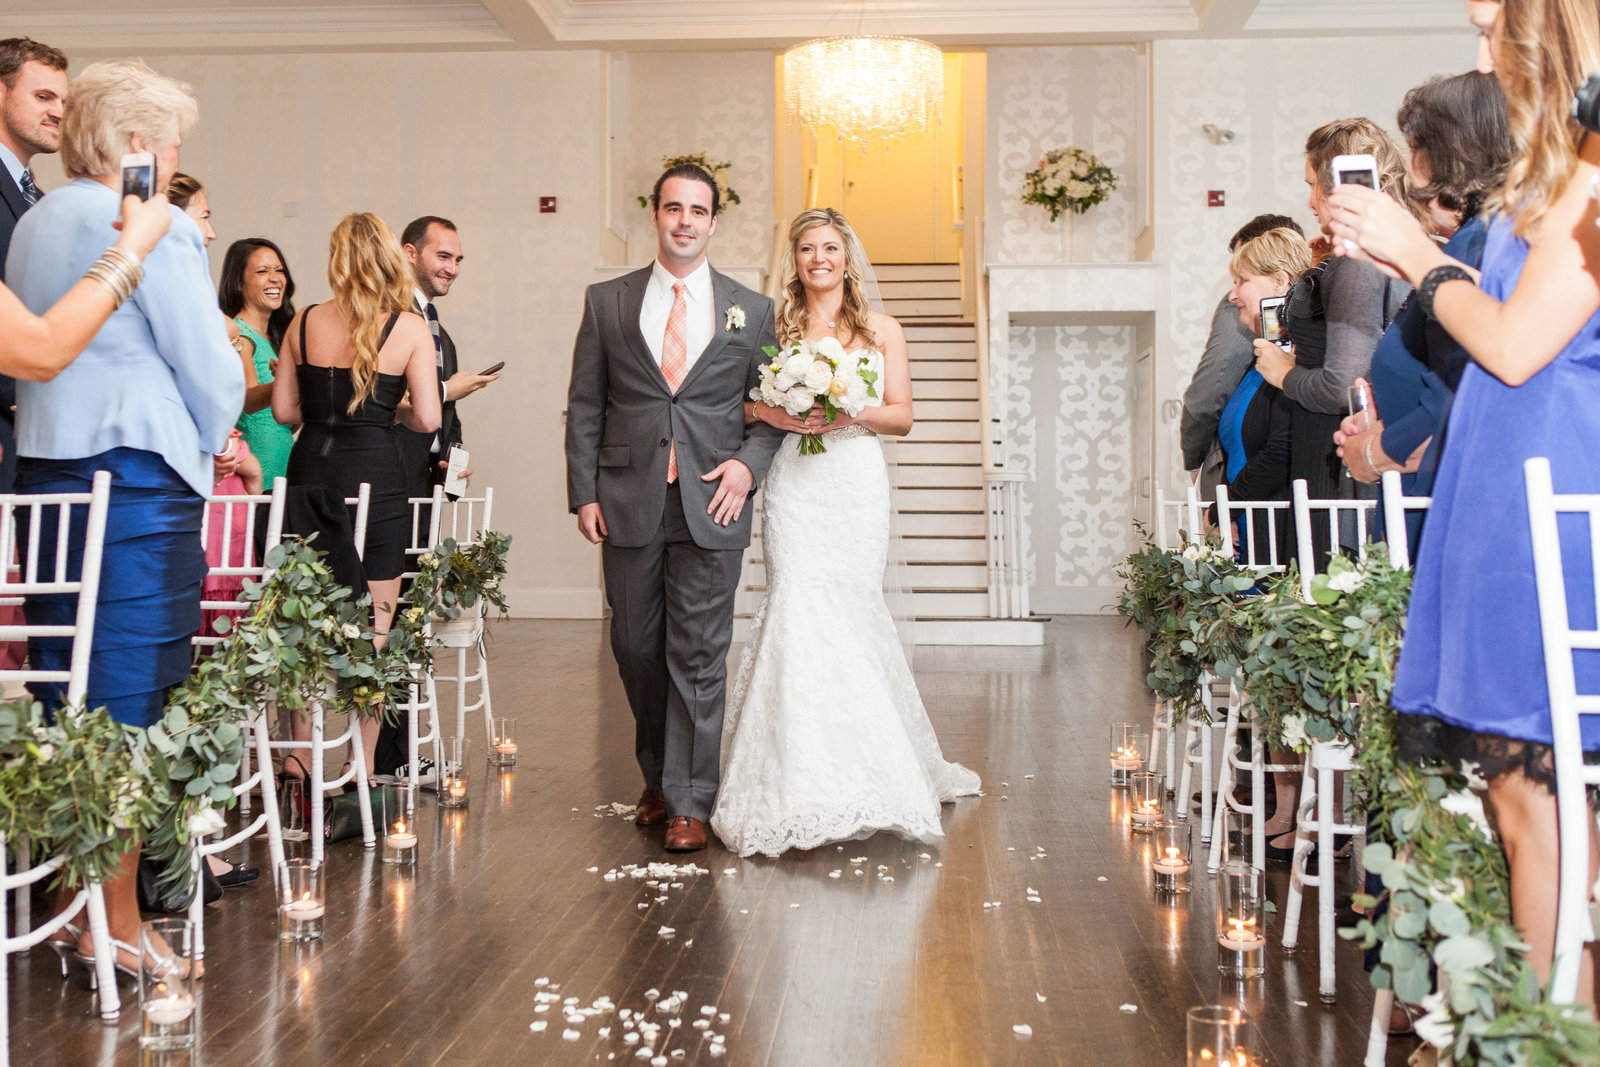 Indoor wedding ceremony at Belle Mer in Newport, RI